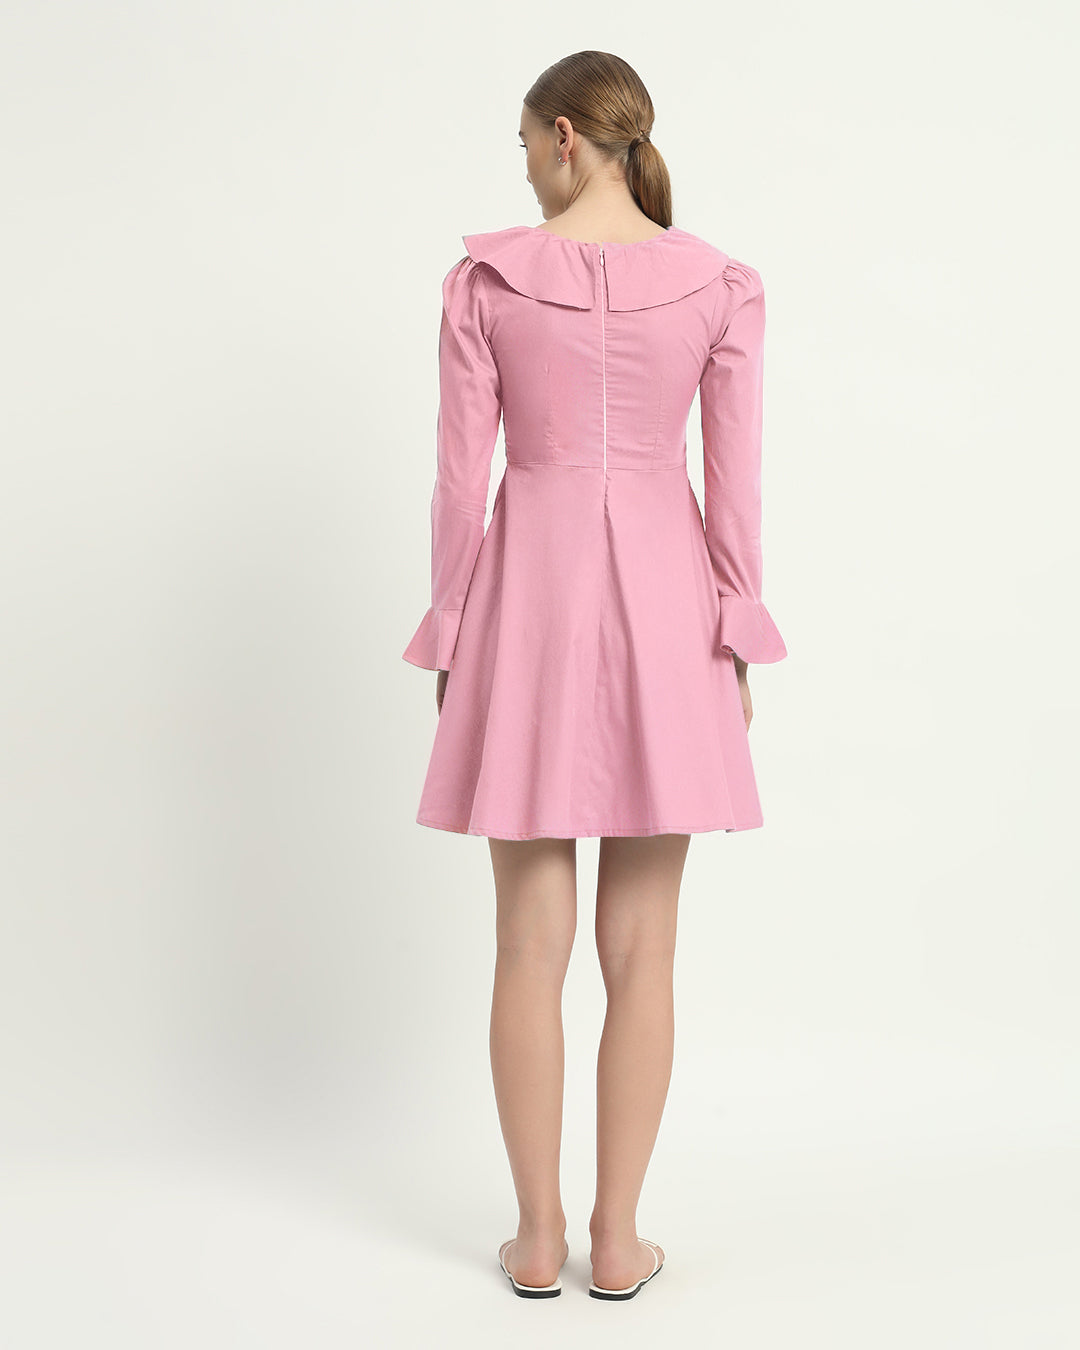 The Fondant Pink Fredonia Cotton Dress